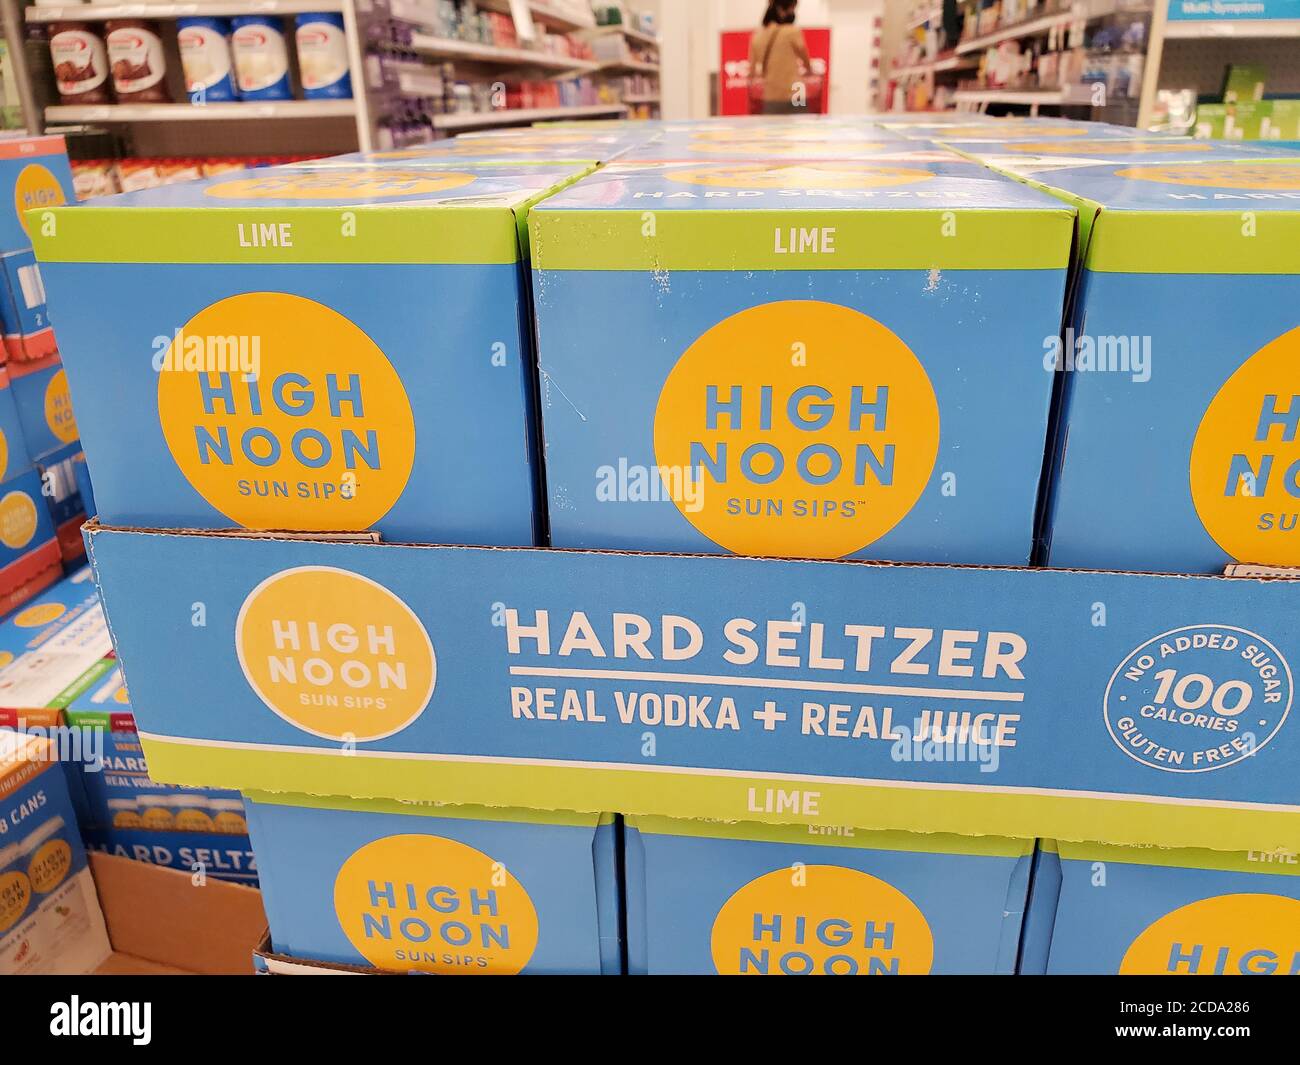 Gros plan d'une pile de conteneurs de séltzer dur de marque High Noon, San Ramon, Californie, 23 juillet 2020. () Banque D'Images